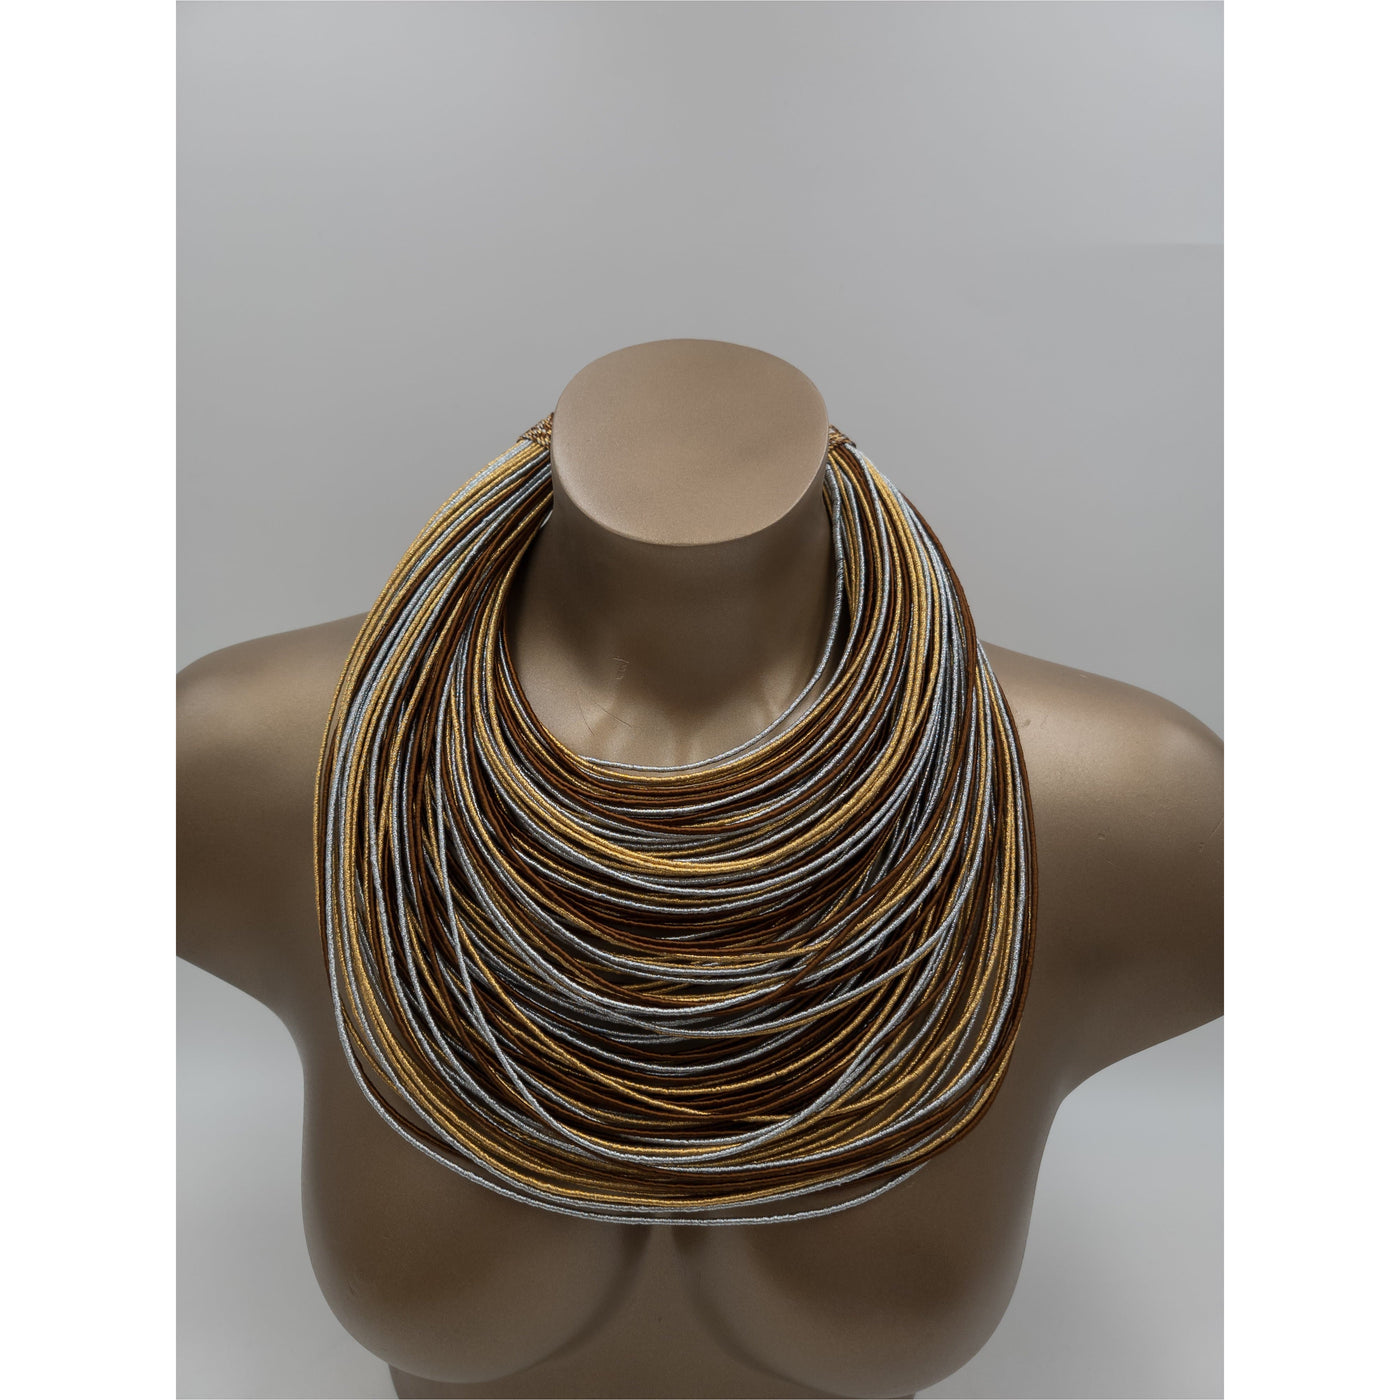 New Bantama 120 Multistrand Thread Necklace - Trufacebygrace